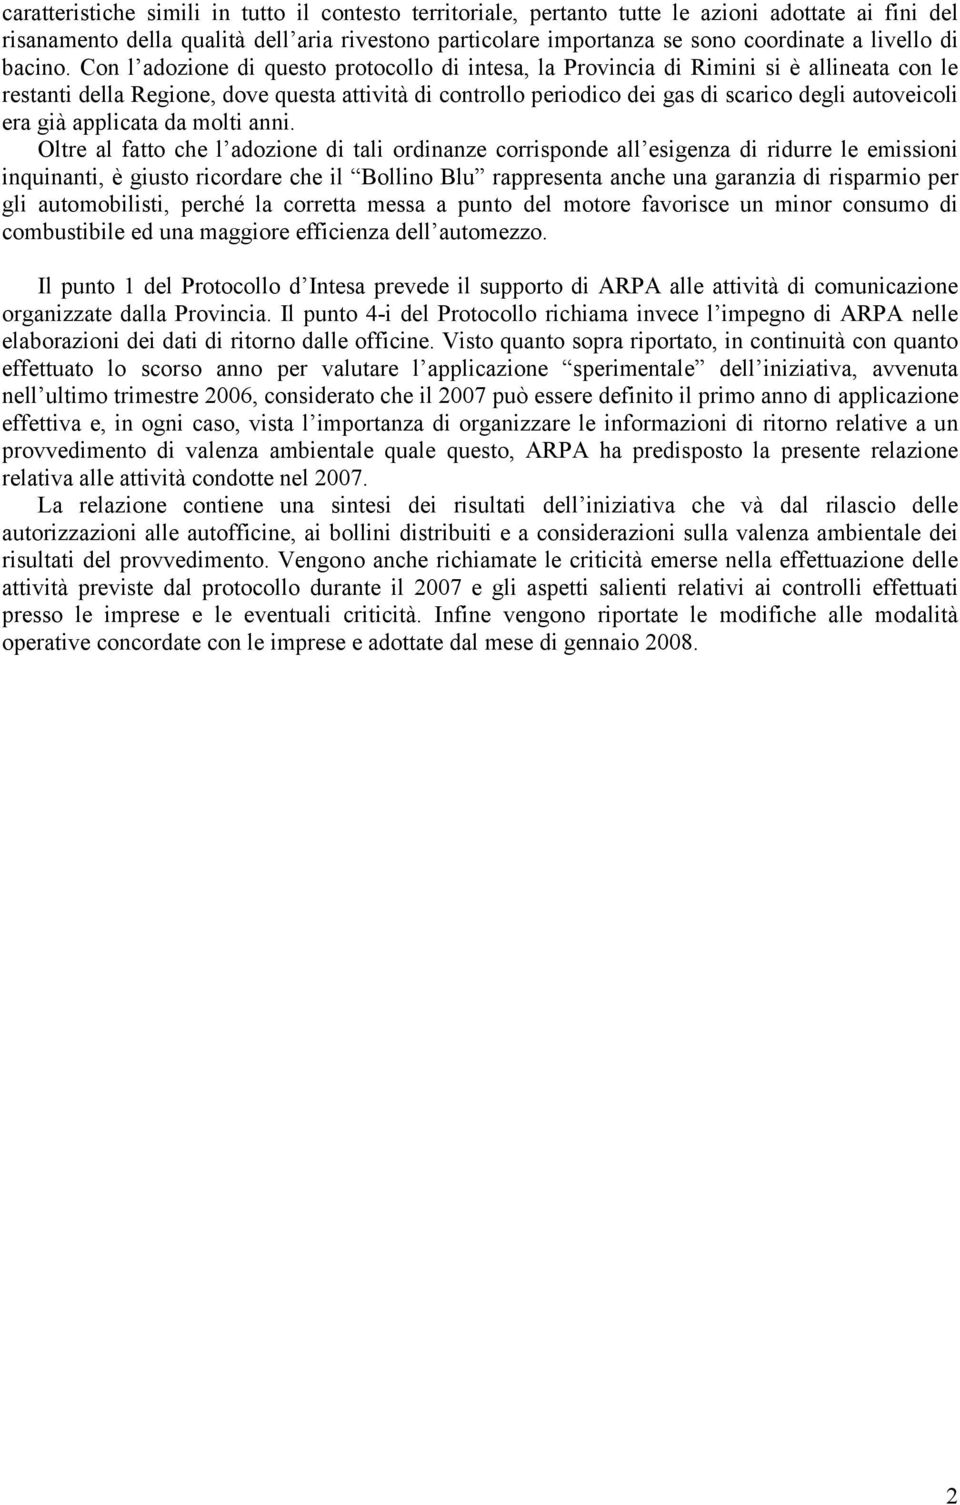 Con l adozione di questo protocollo di intesa, la Provincia di Rimini si è allineata con le restanti della Regione, dove questa attività di controllo periodico dei gas di scarico degli autoveicoli